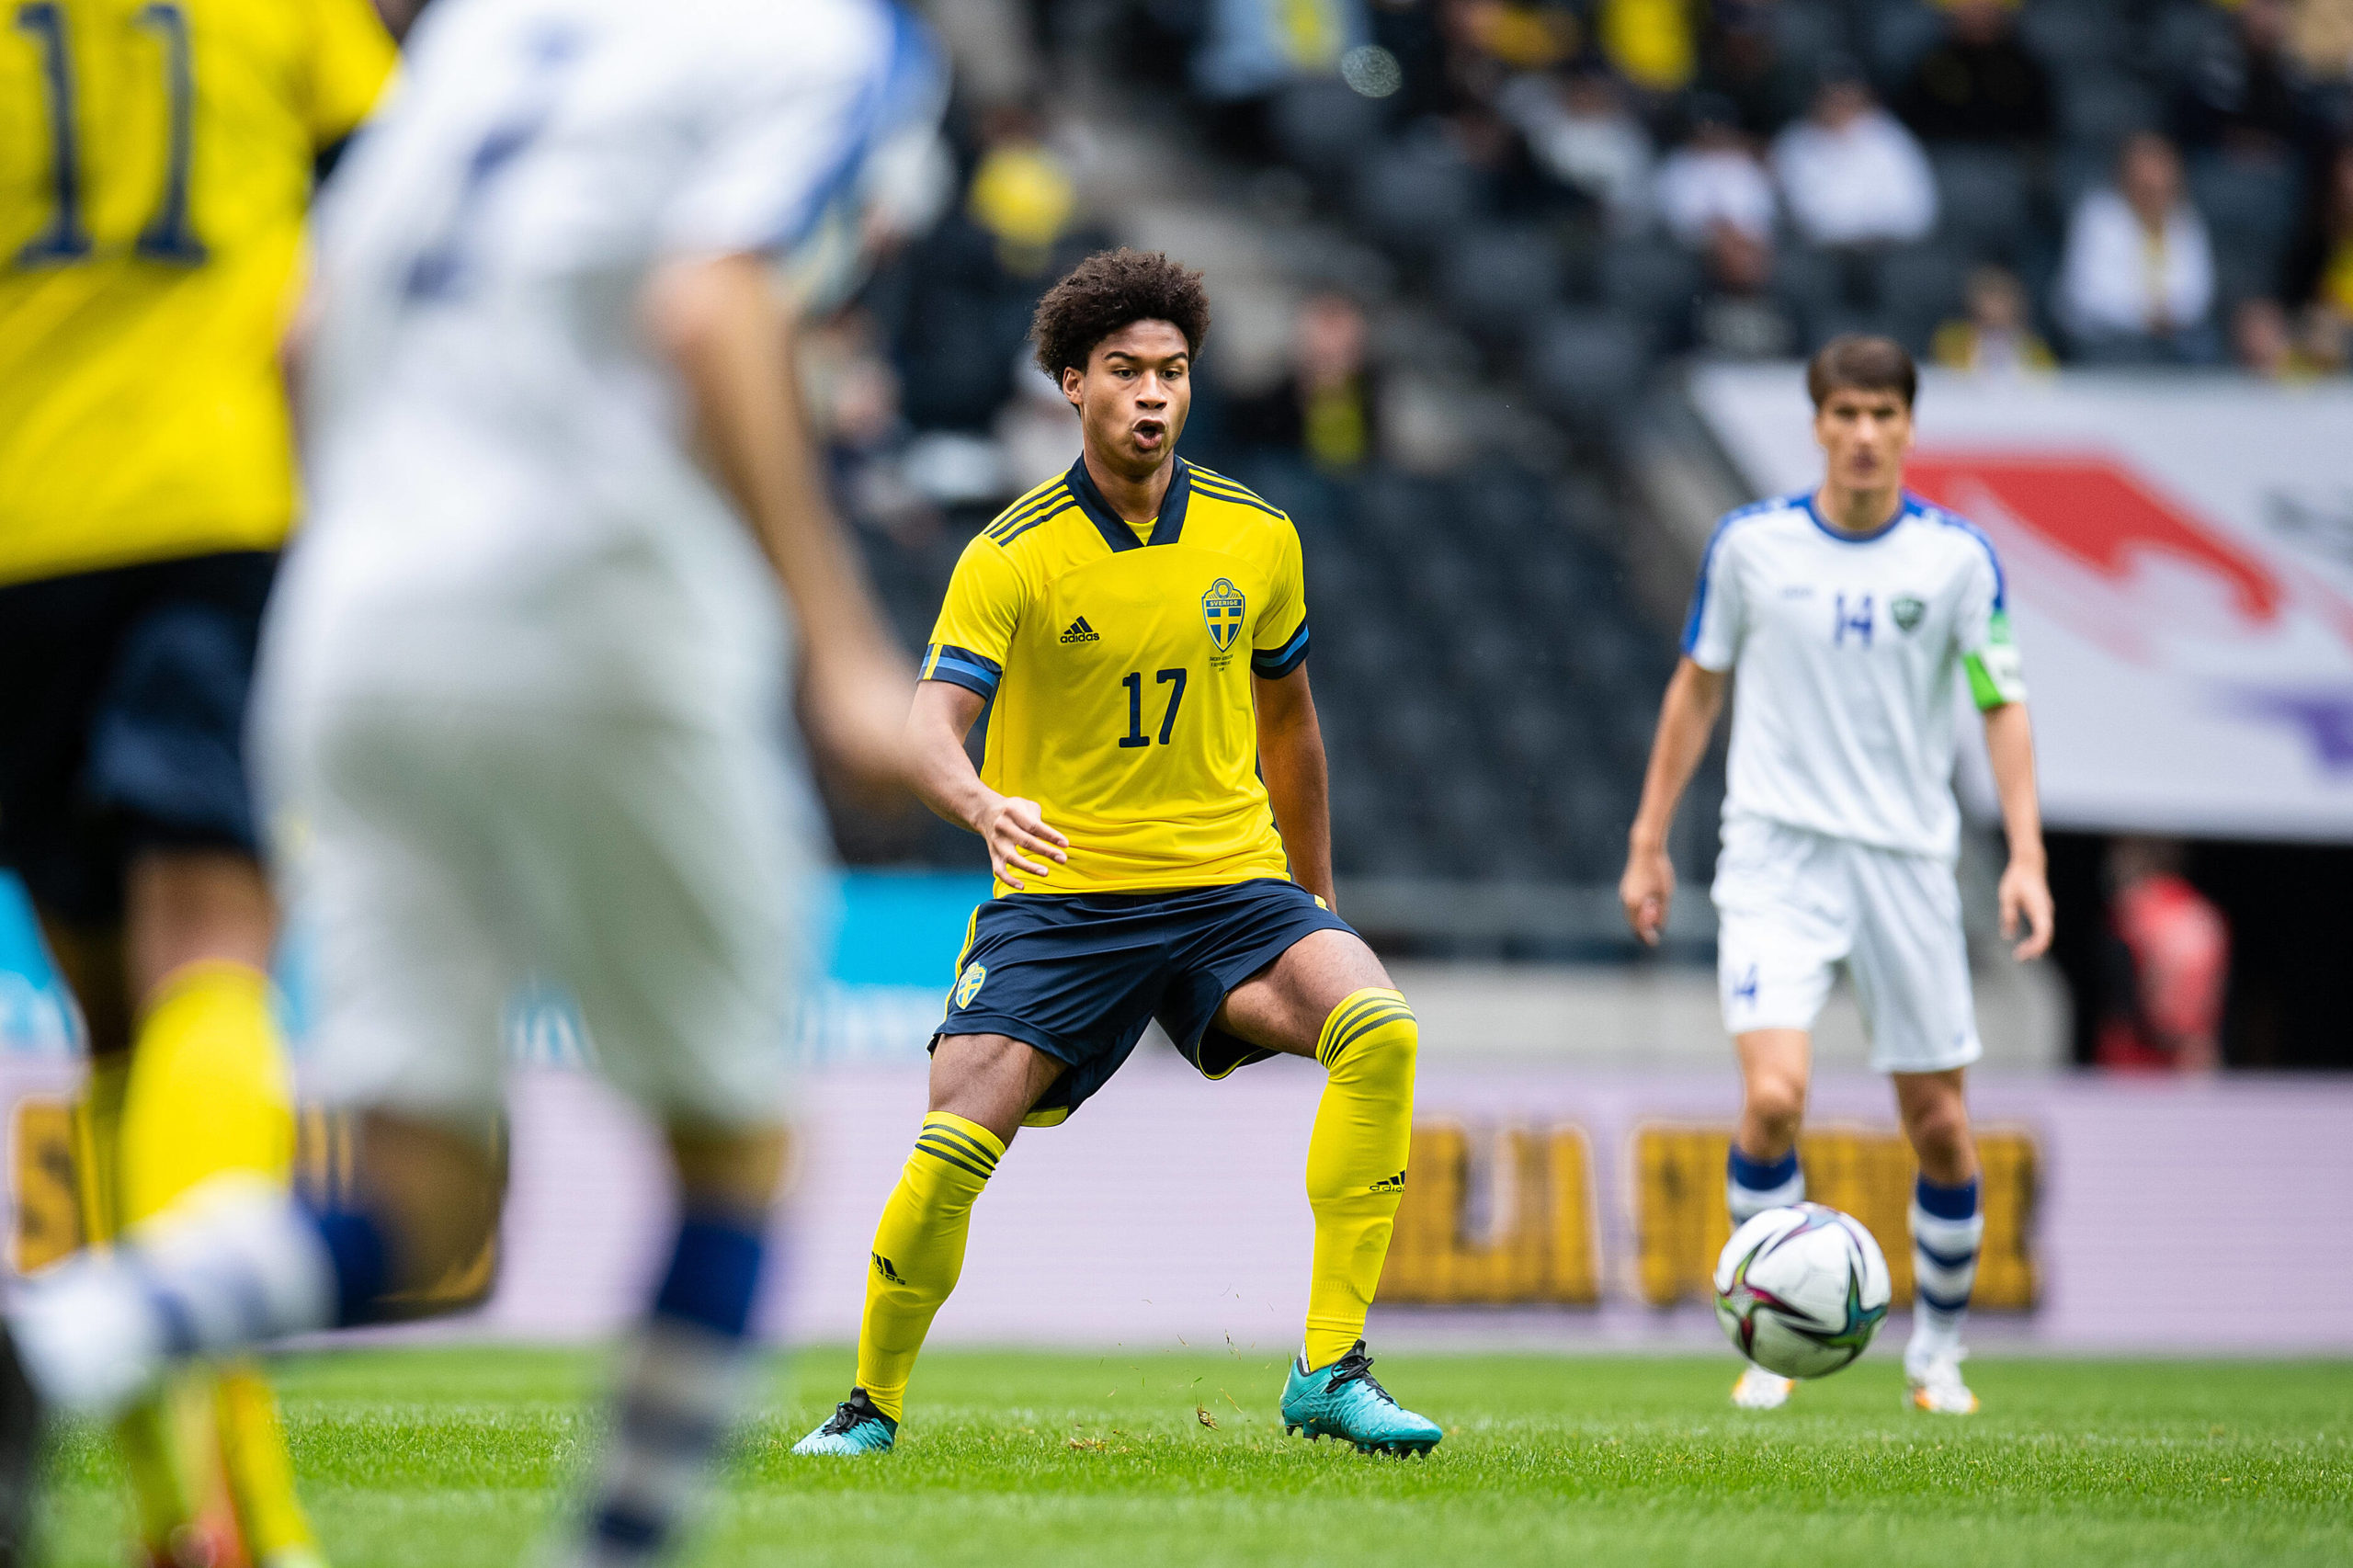 Leeds United target Jens Cajuste in action for Sweden